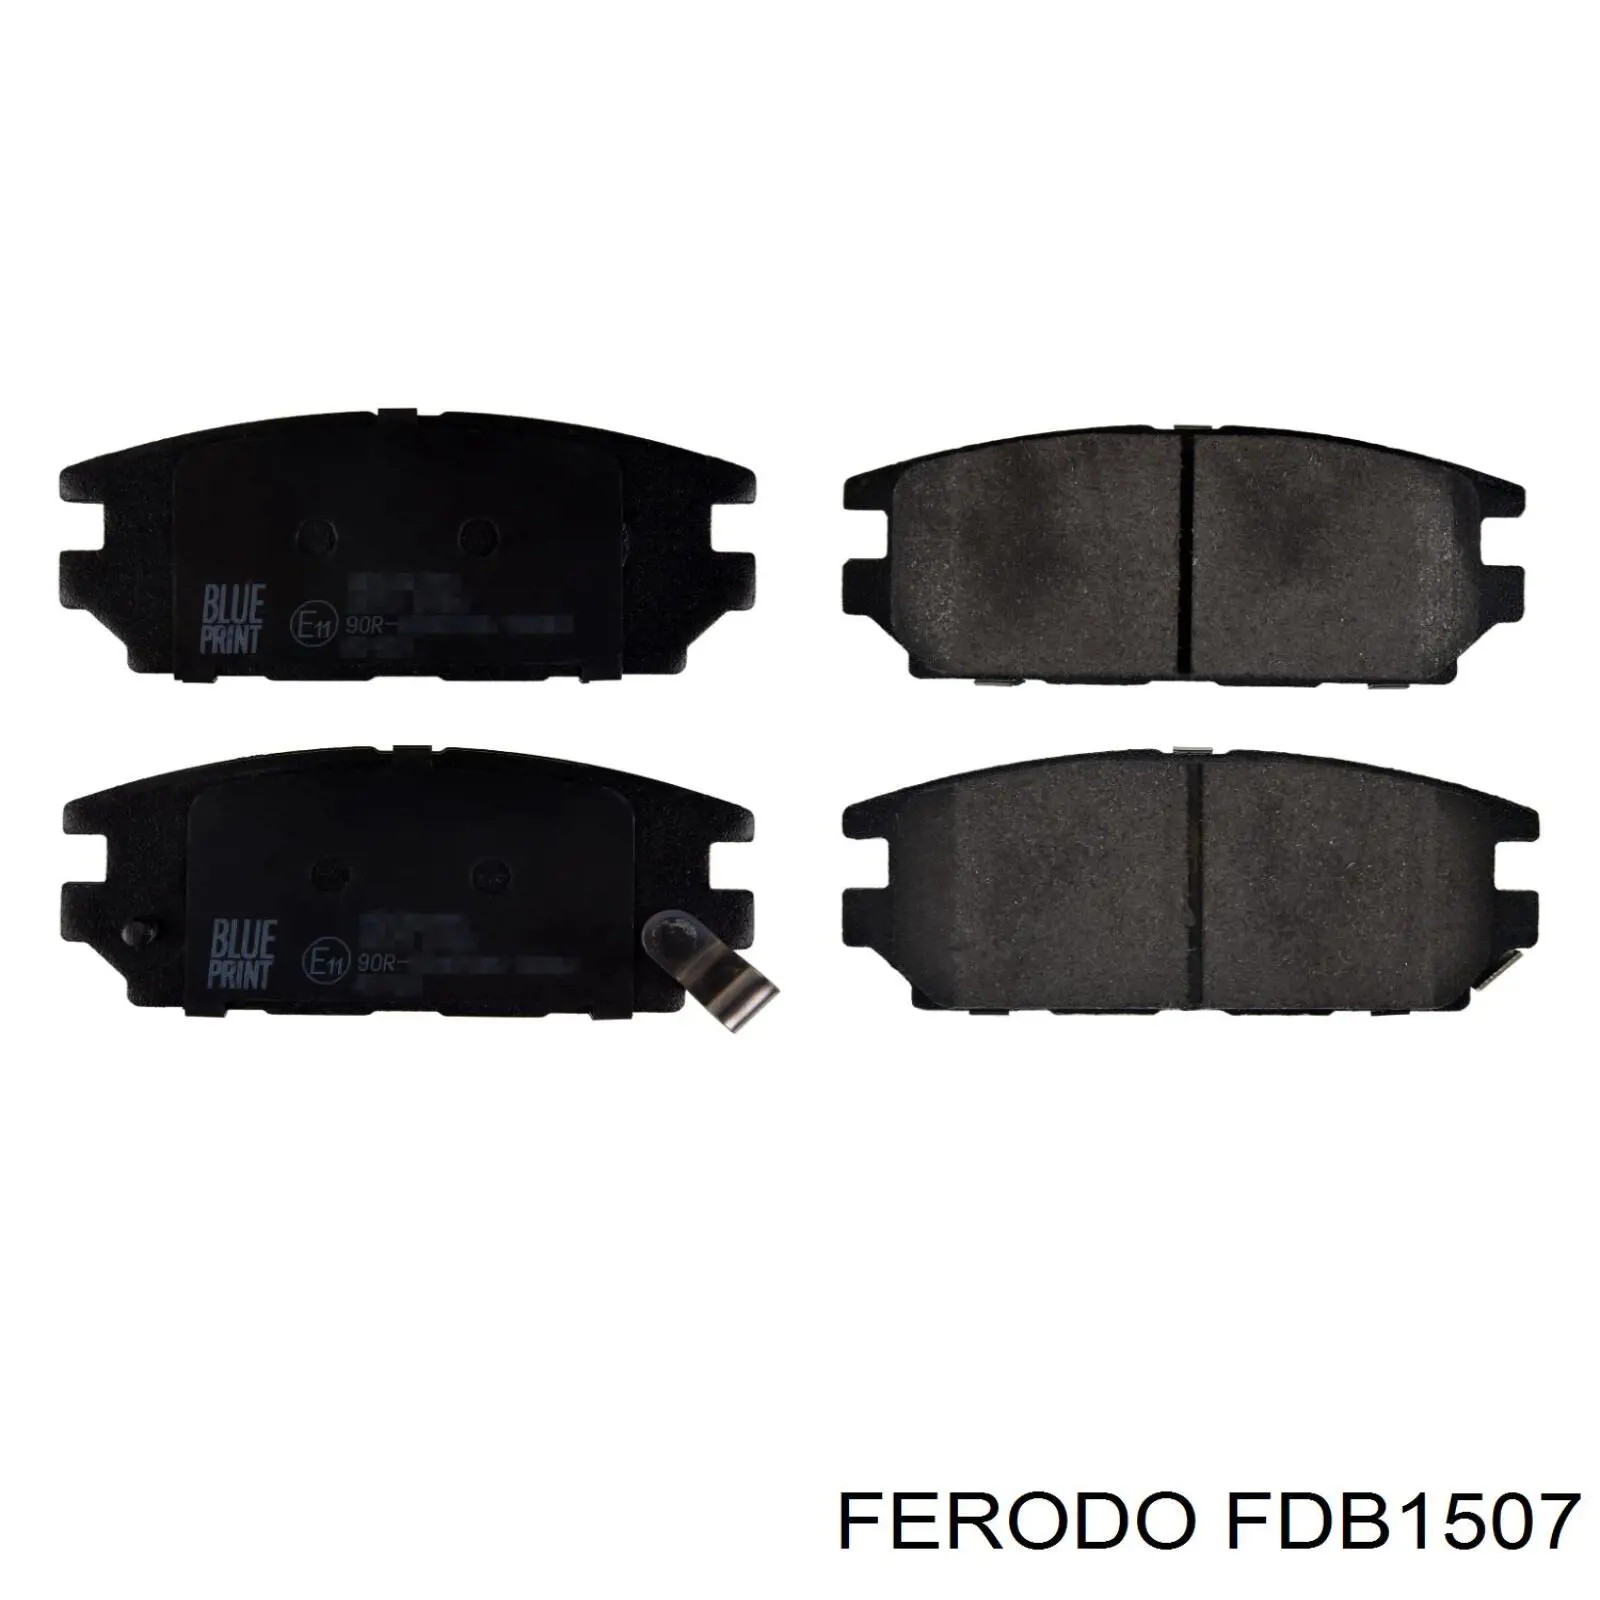 FDB1507 Ferodo колодки тормозные задние дисковые